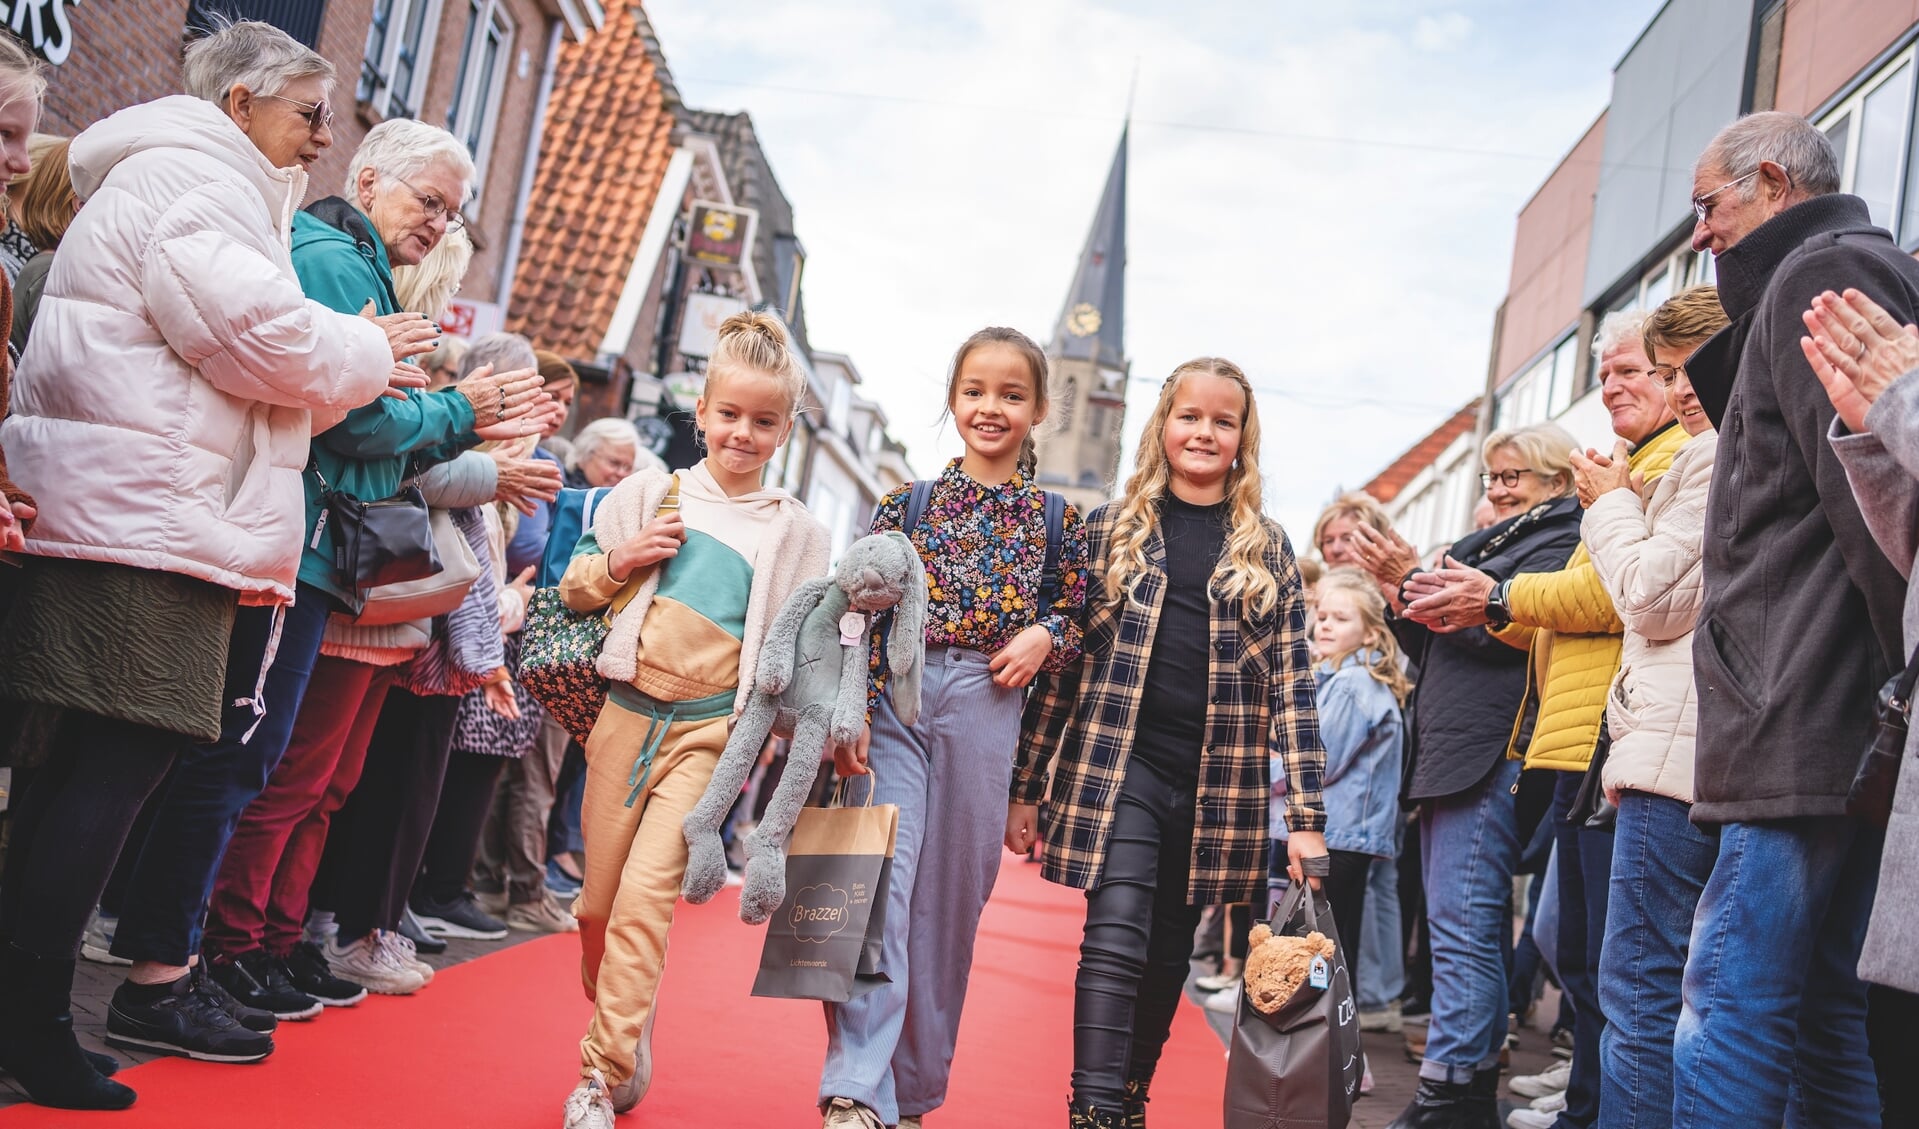 Op zondag 2 april vindt in het centrum van Lichtenvoorde weer de populaire modeshow plaats. Foto: Jorieke Philippi